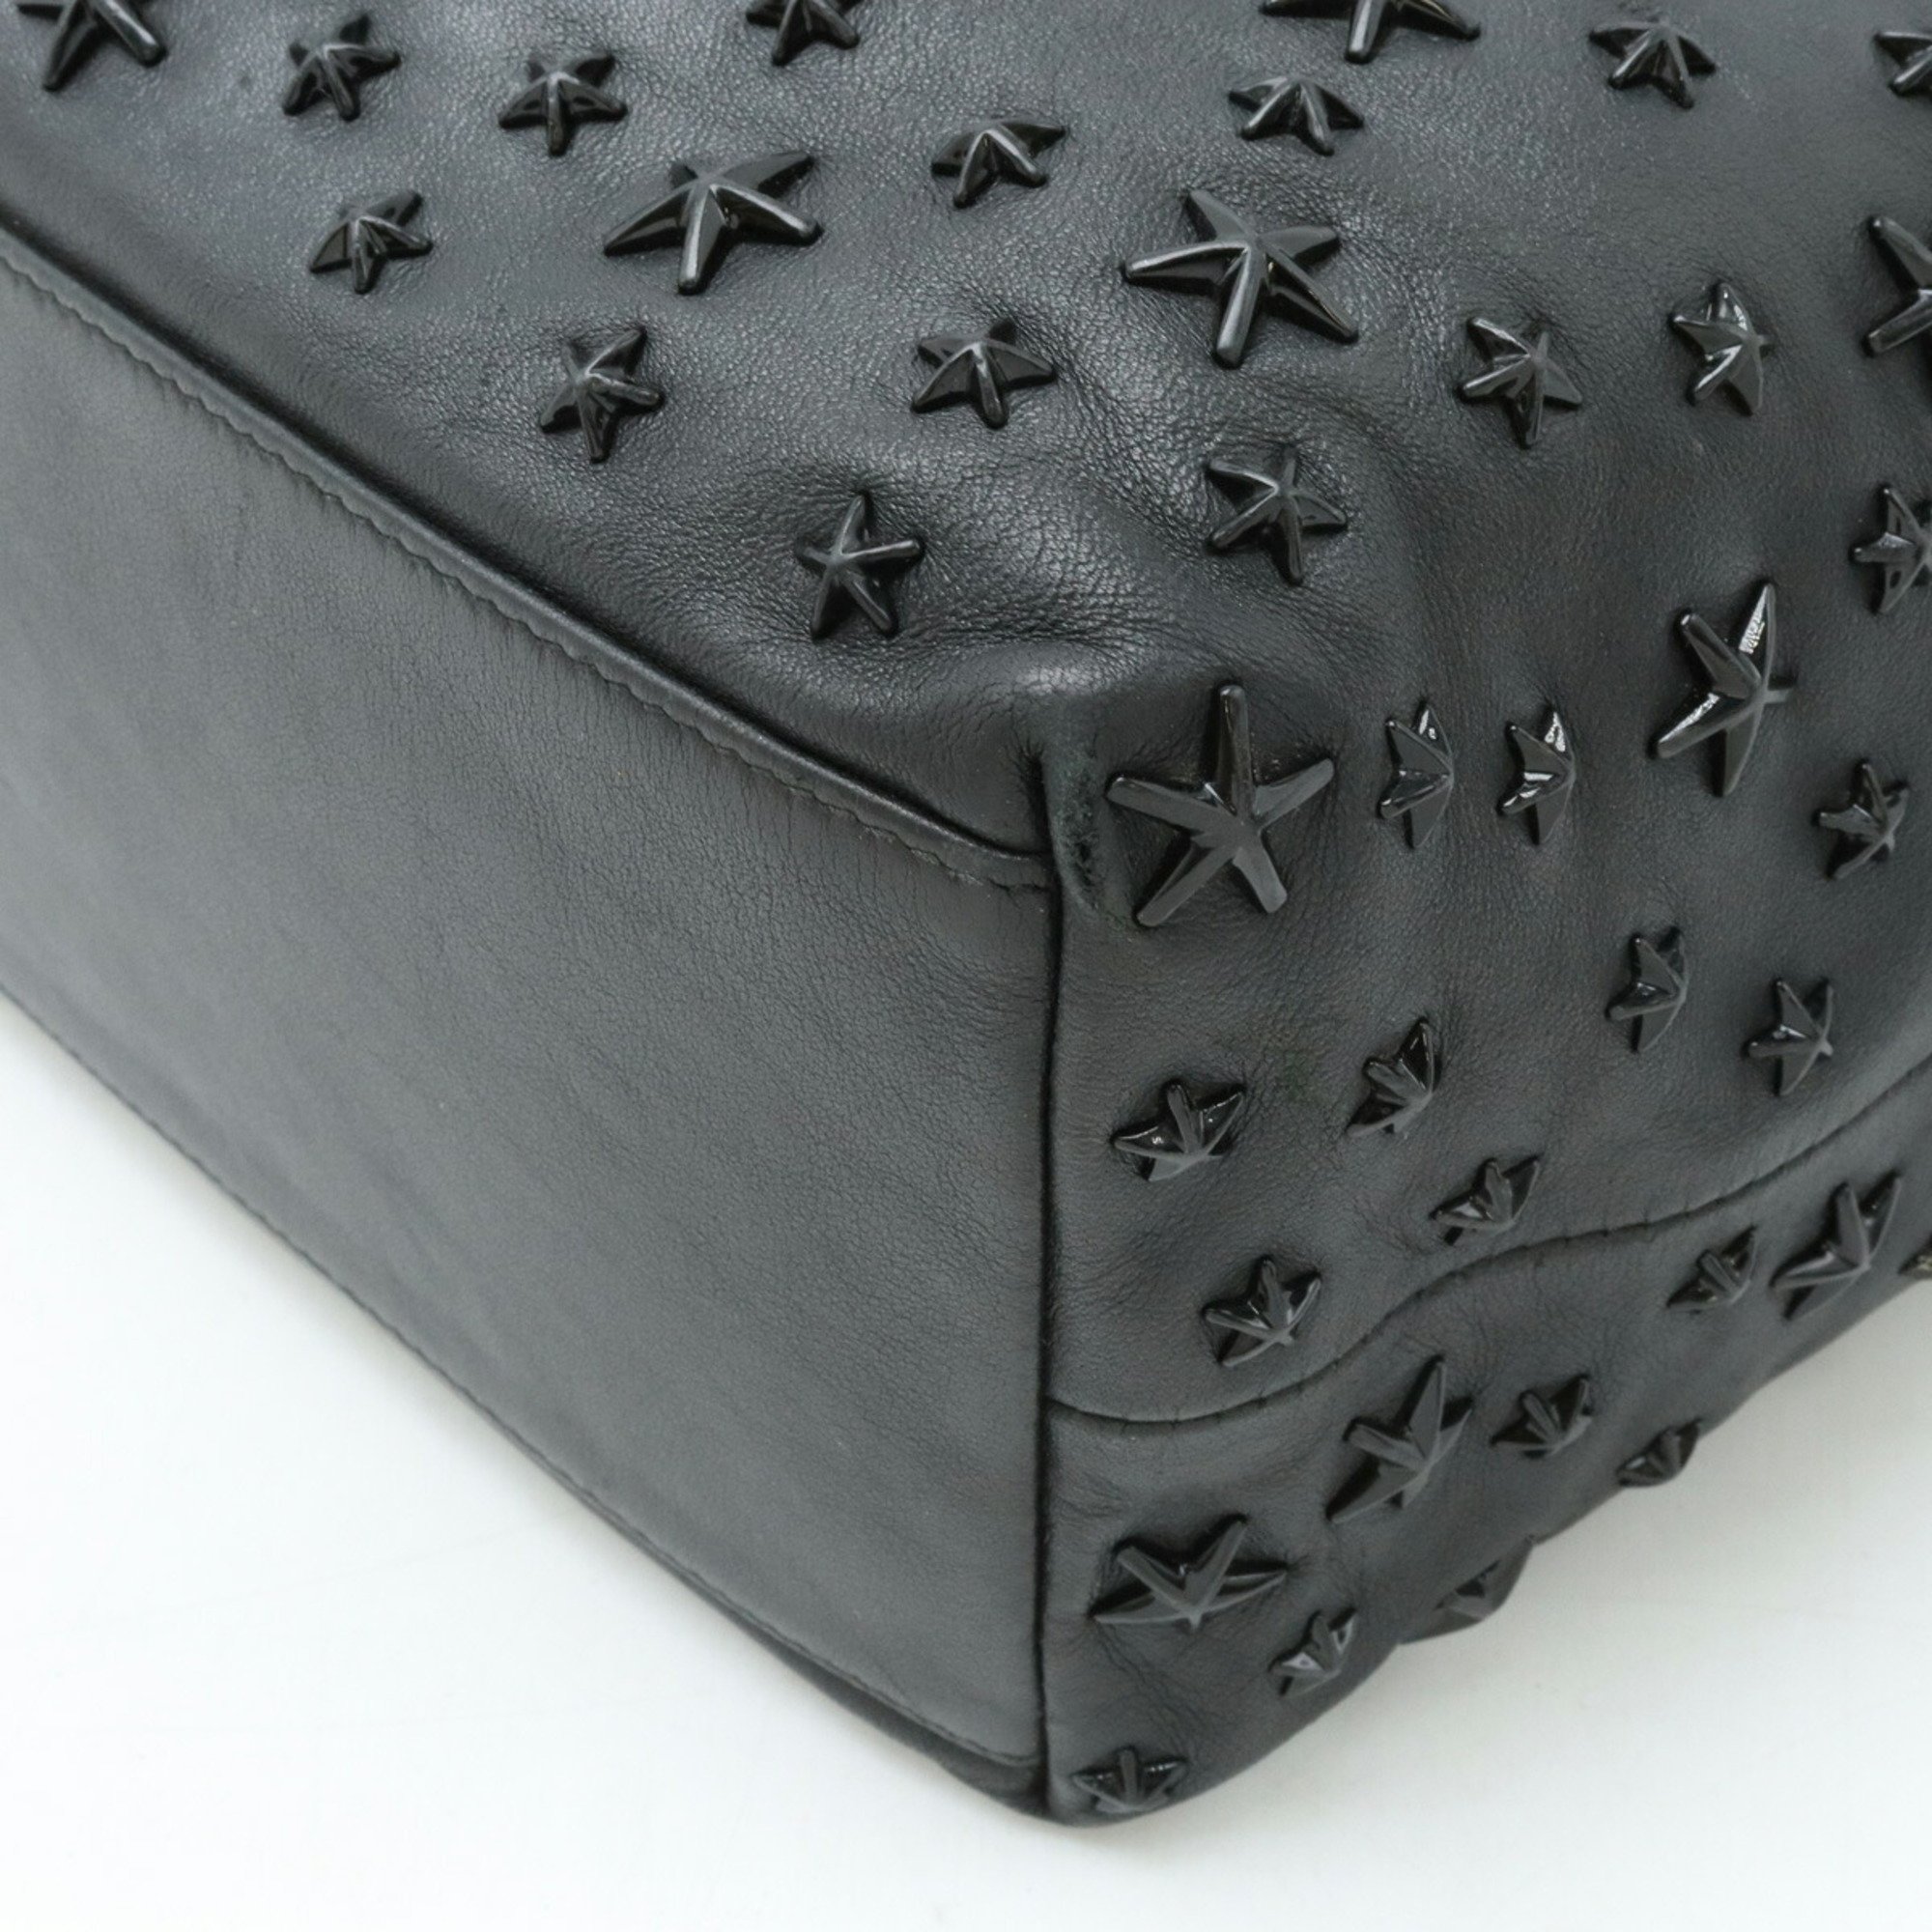 JIMMY CHOO Jimmy Choo SOFIA/M Tote bag Shoulder Star studs Leather Black